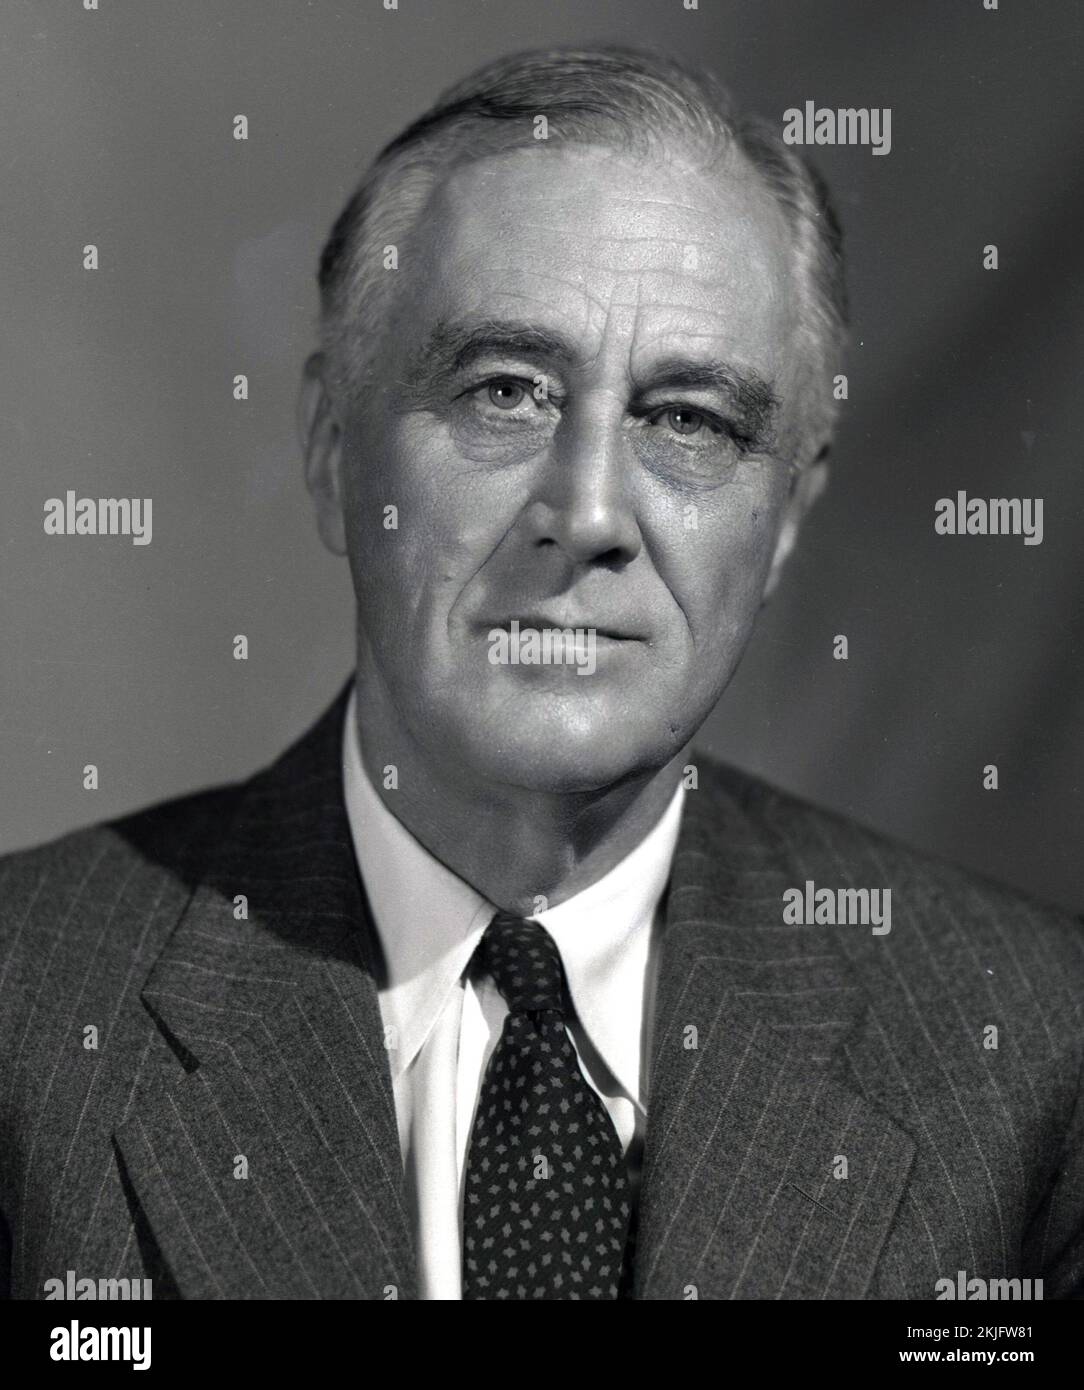 Un retrato de 1944 del presidente estadounidense Franklin D Roosevelt. Tenía 62 años. Crédito de la foto por FDR Biblioteca Presidencial y Museo - 09-109(12), CC POR 2,0, https://commons.wikimedia.org/w/index.php?curid=40021191 Foto de stock